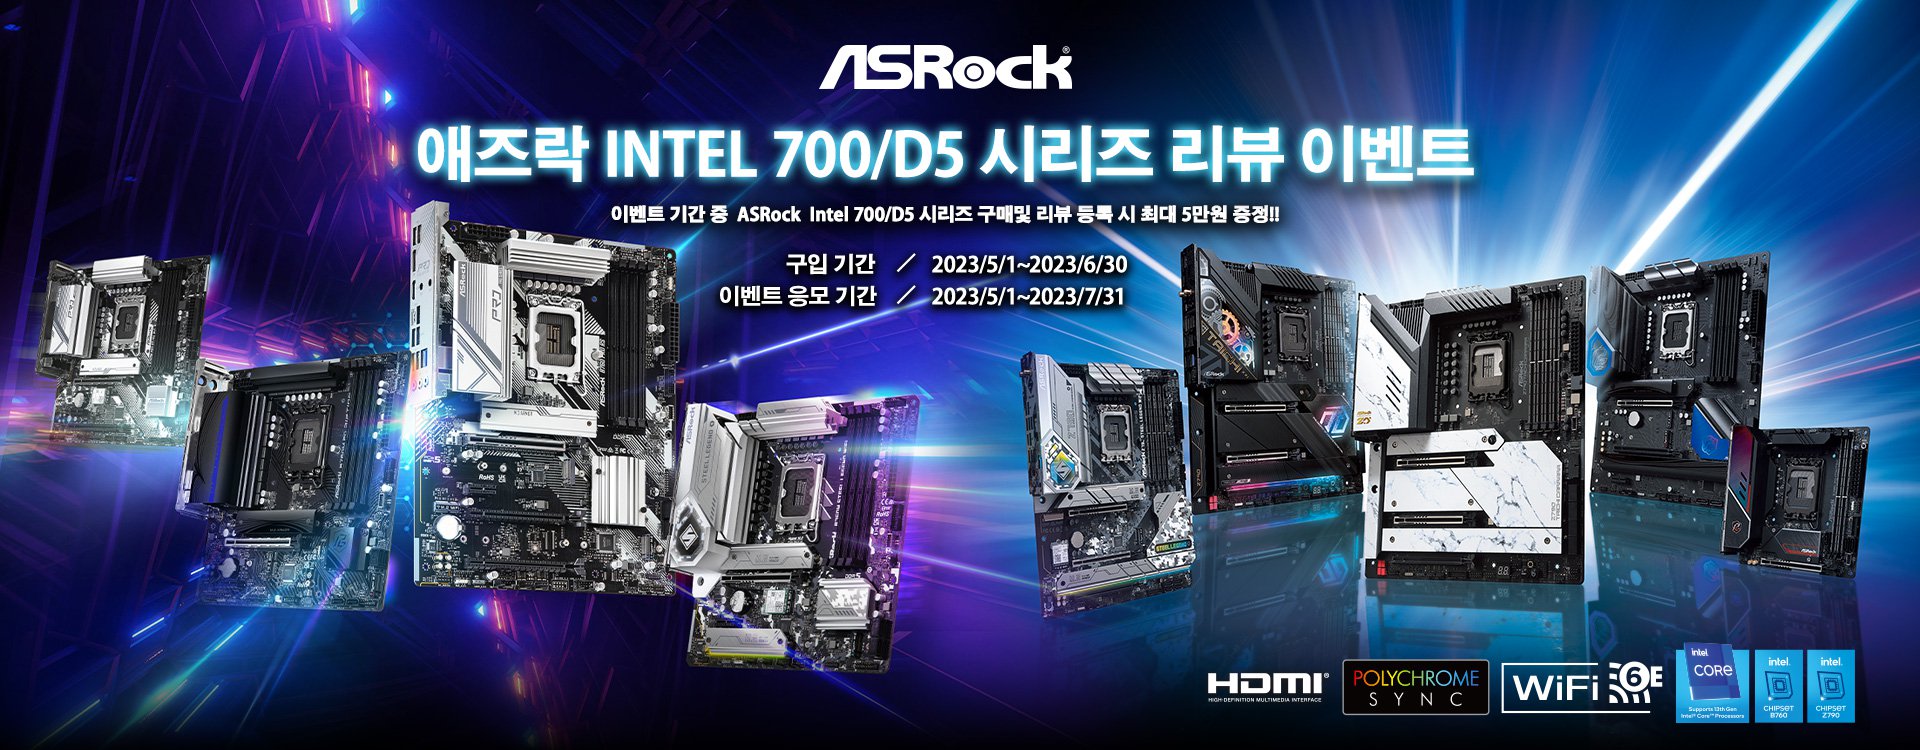 애즈락 Intel 700/D5 시리즈 리뷰 이벤트